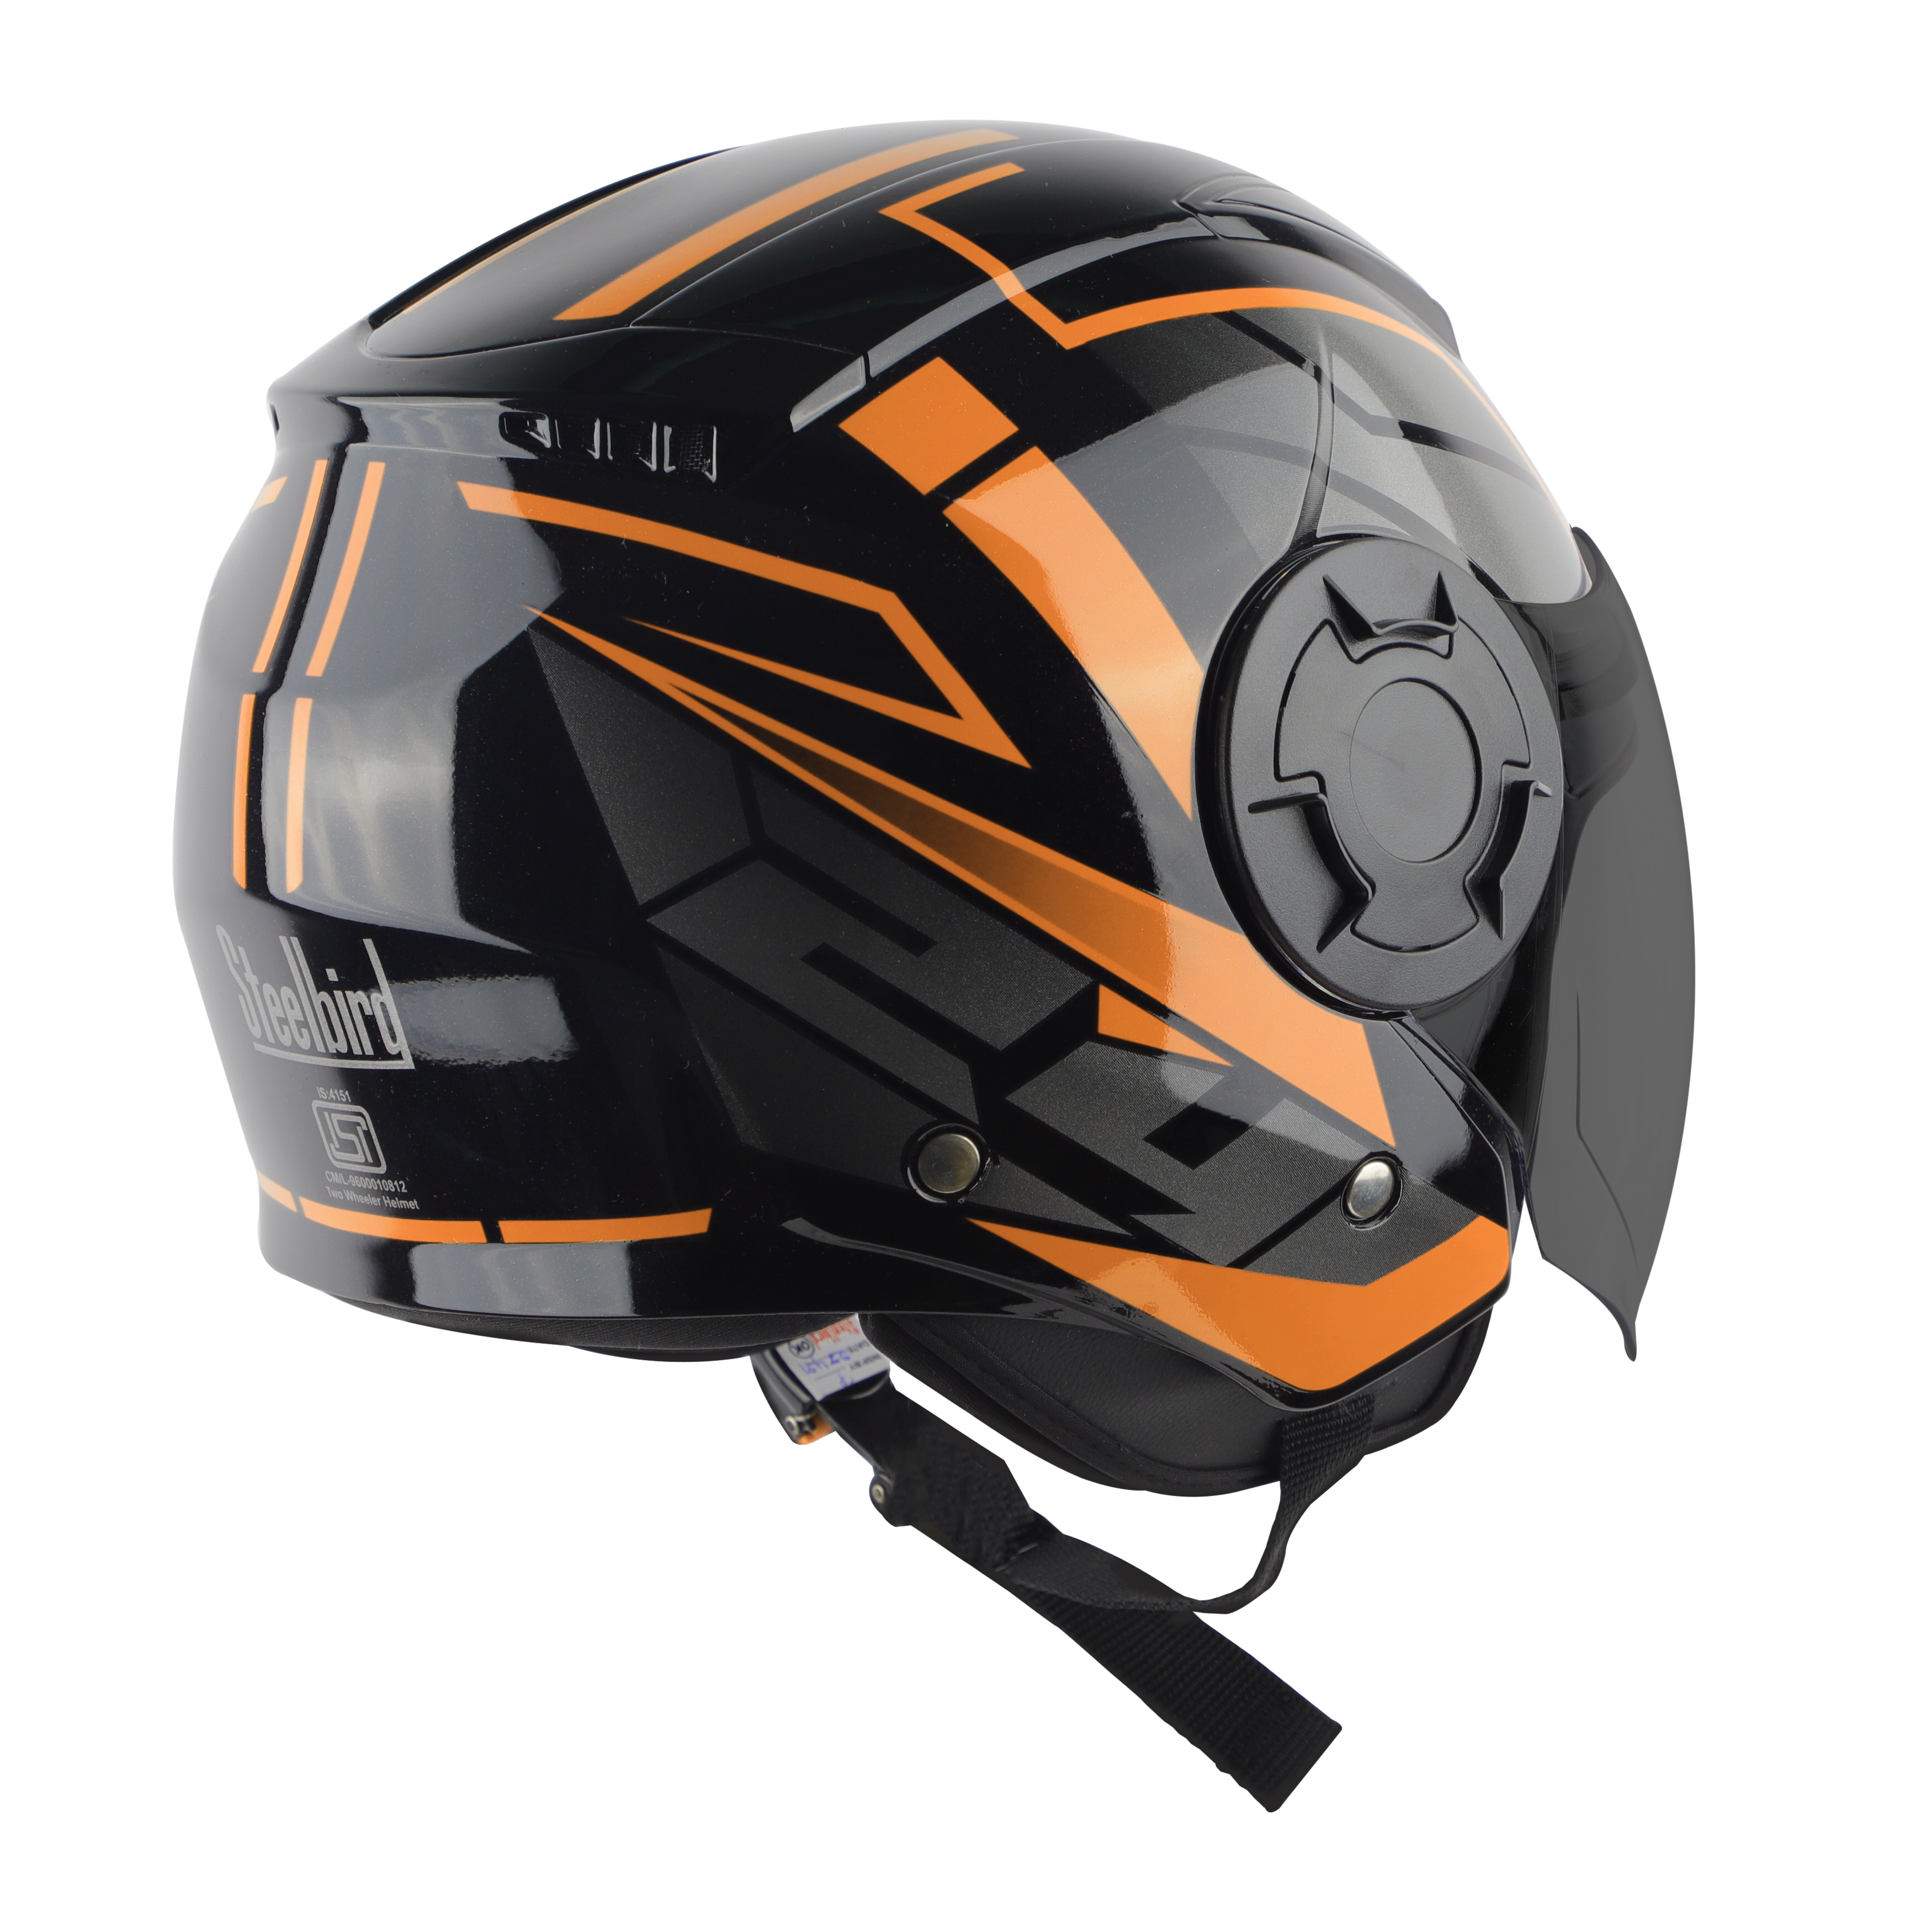 Steelbird SBH-31 Baron ISI Certified Open Face Helmet For Men And Women (Matt Black Orange With Smoke Visor)